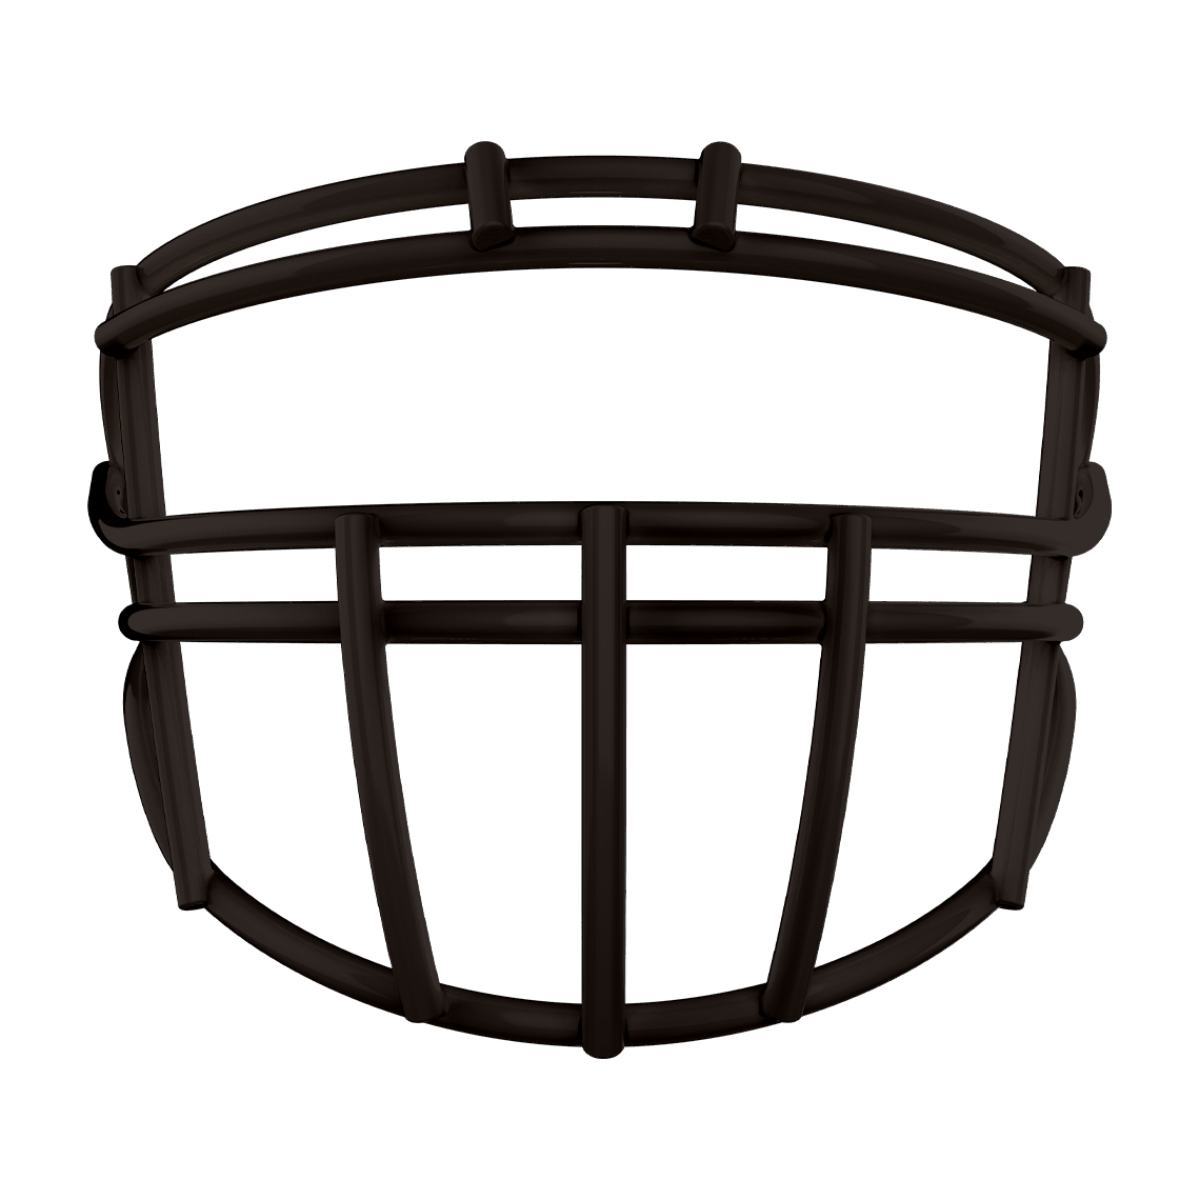 Black XRN-22X face mask for football helmet.